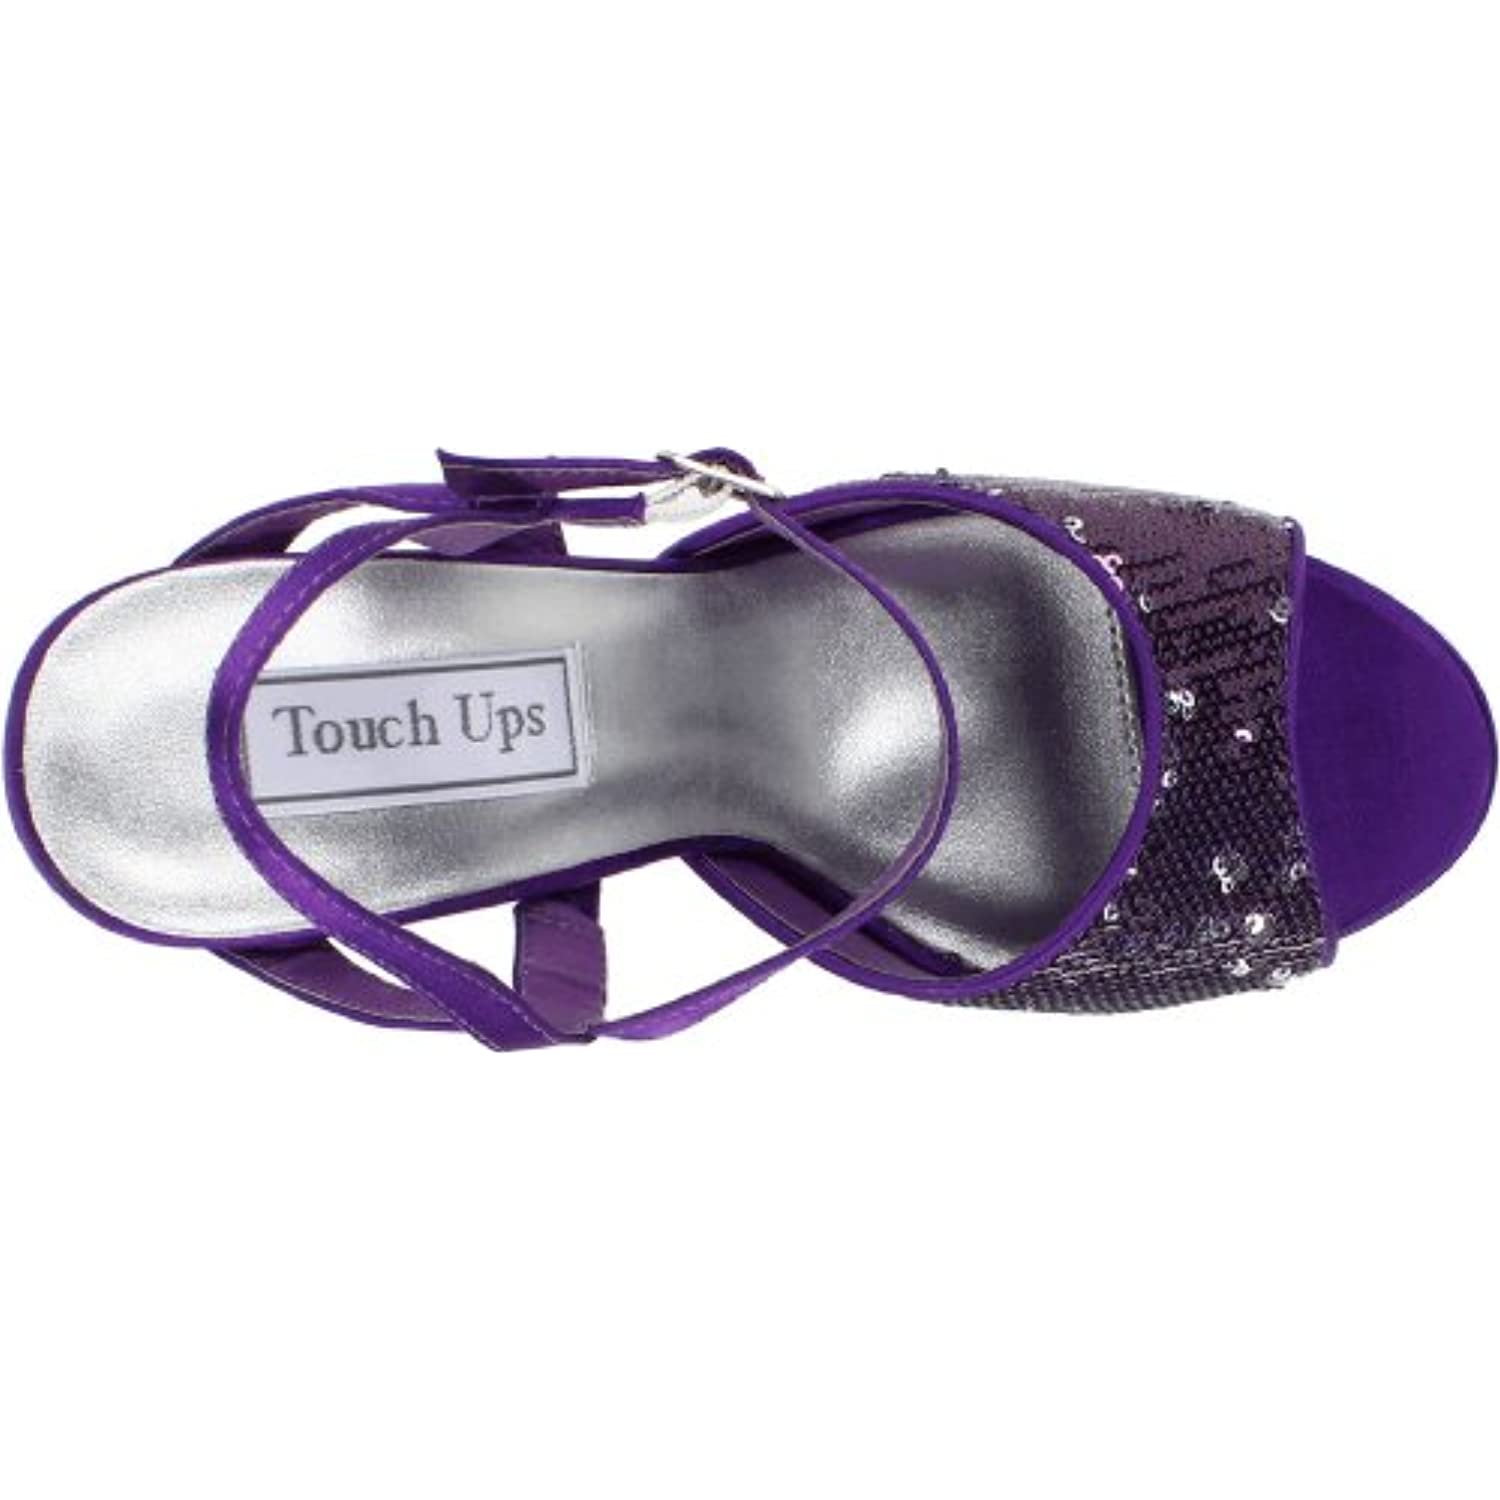 Touch Ups Women's Bev Platform Pump,Purple Sequins,10.5 M US